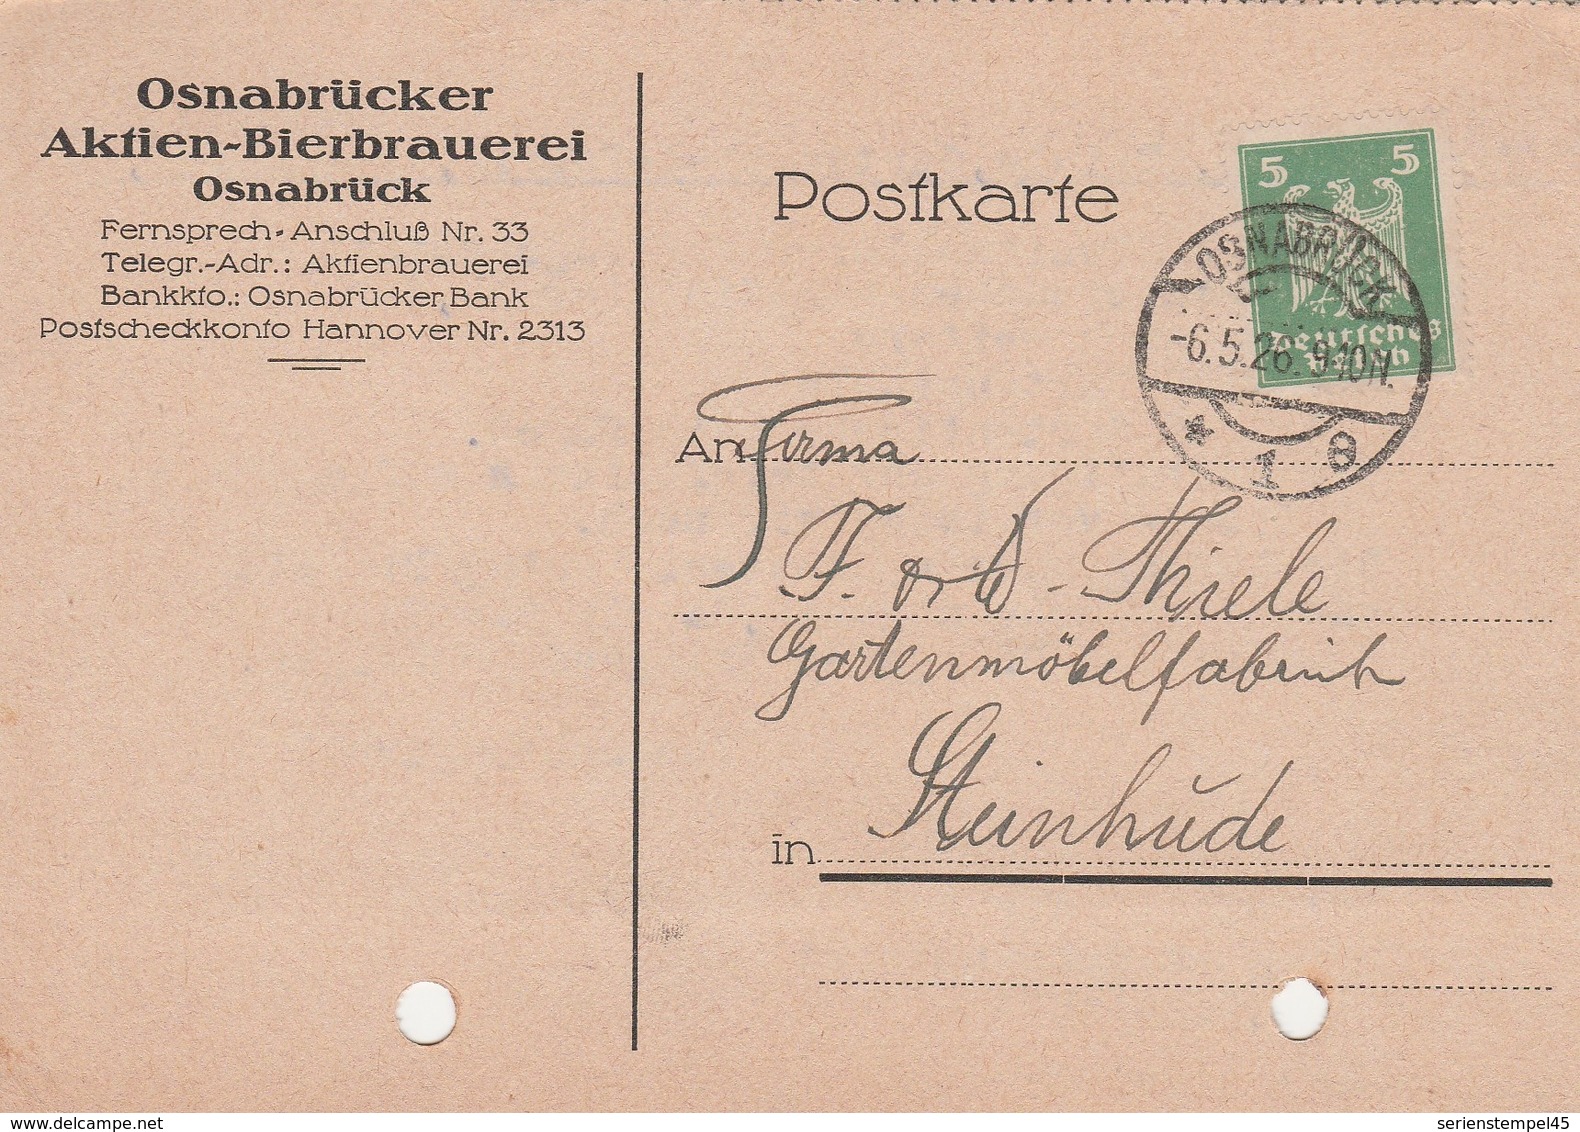 Deutsches Reich Firmenkarte Brauerei Bier Osnabrücker Aktien Bierbrauerei Osnabrück 1926 - Covers & Documents